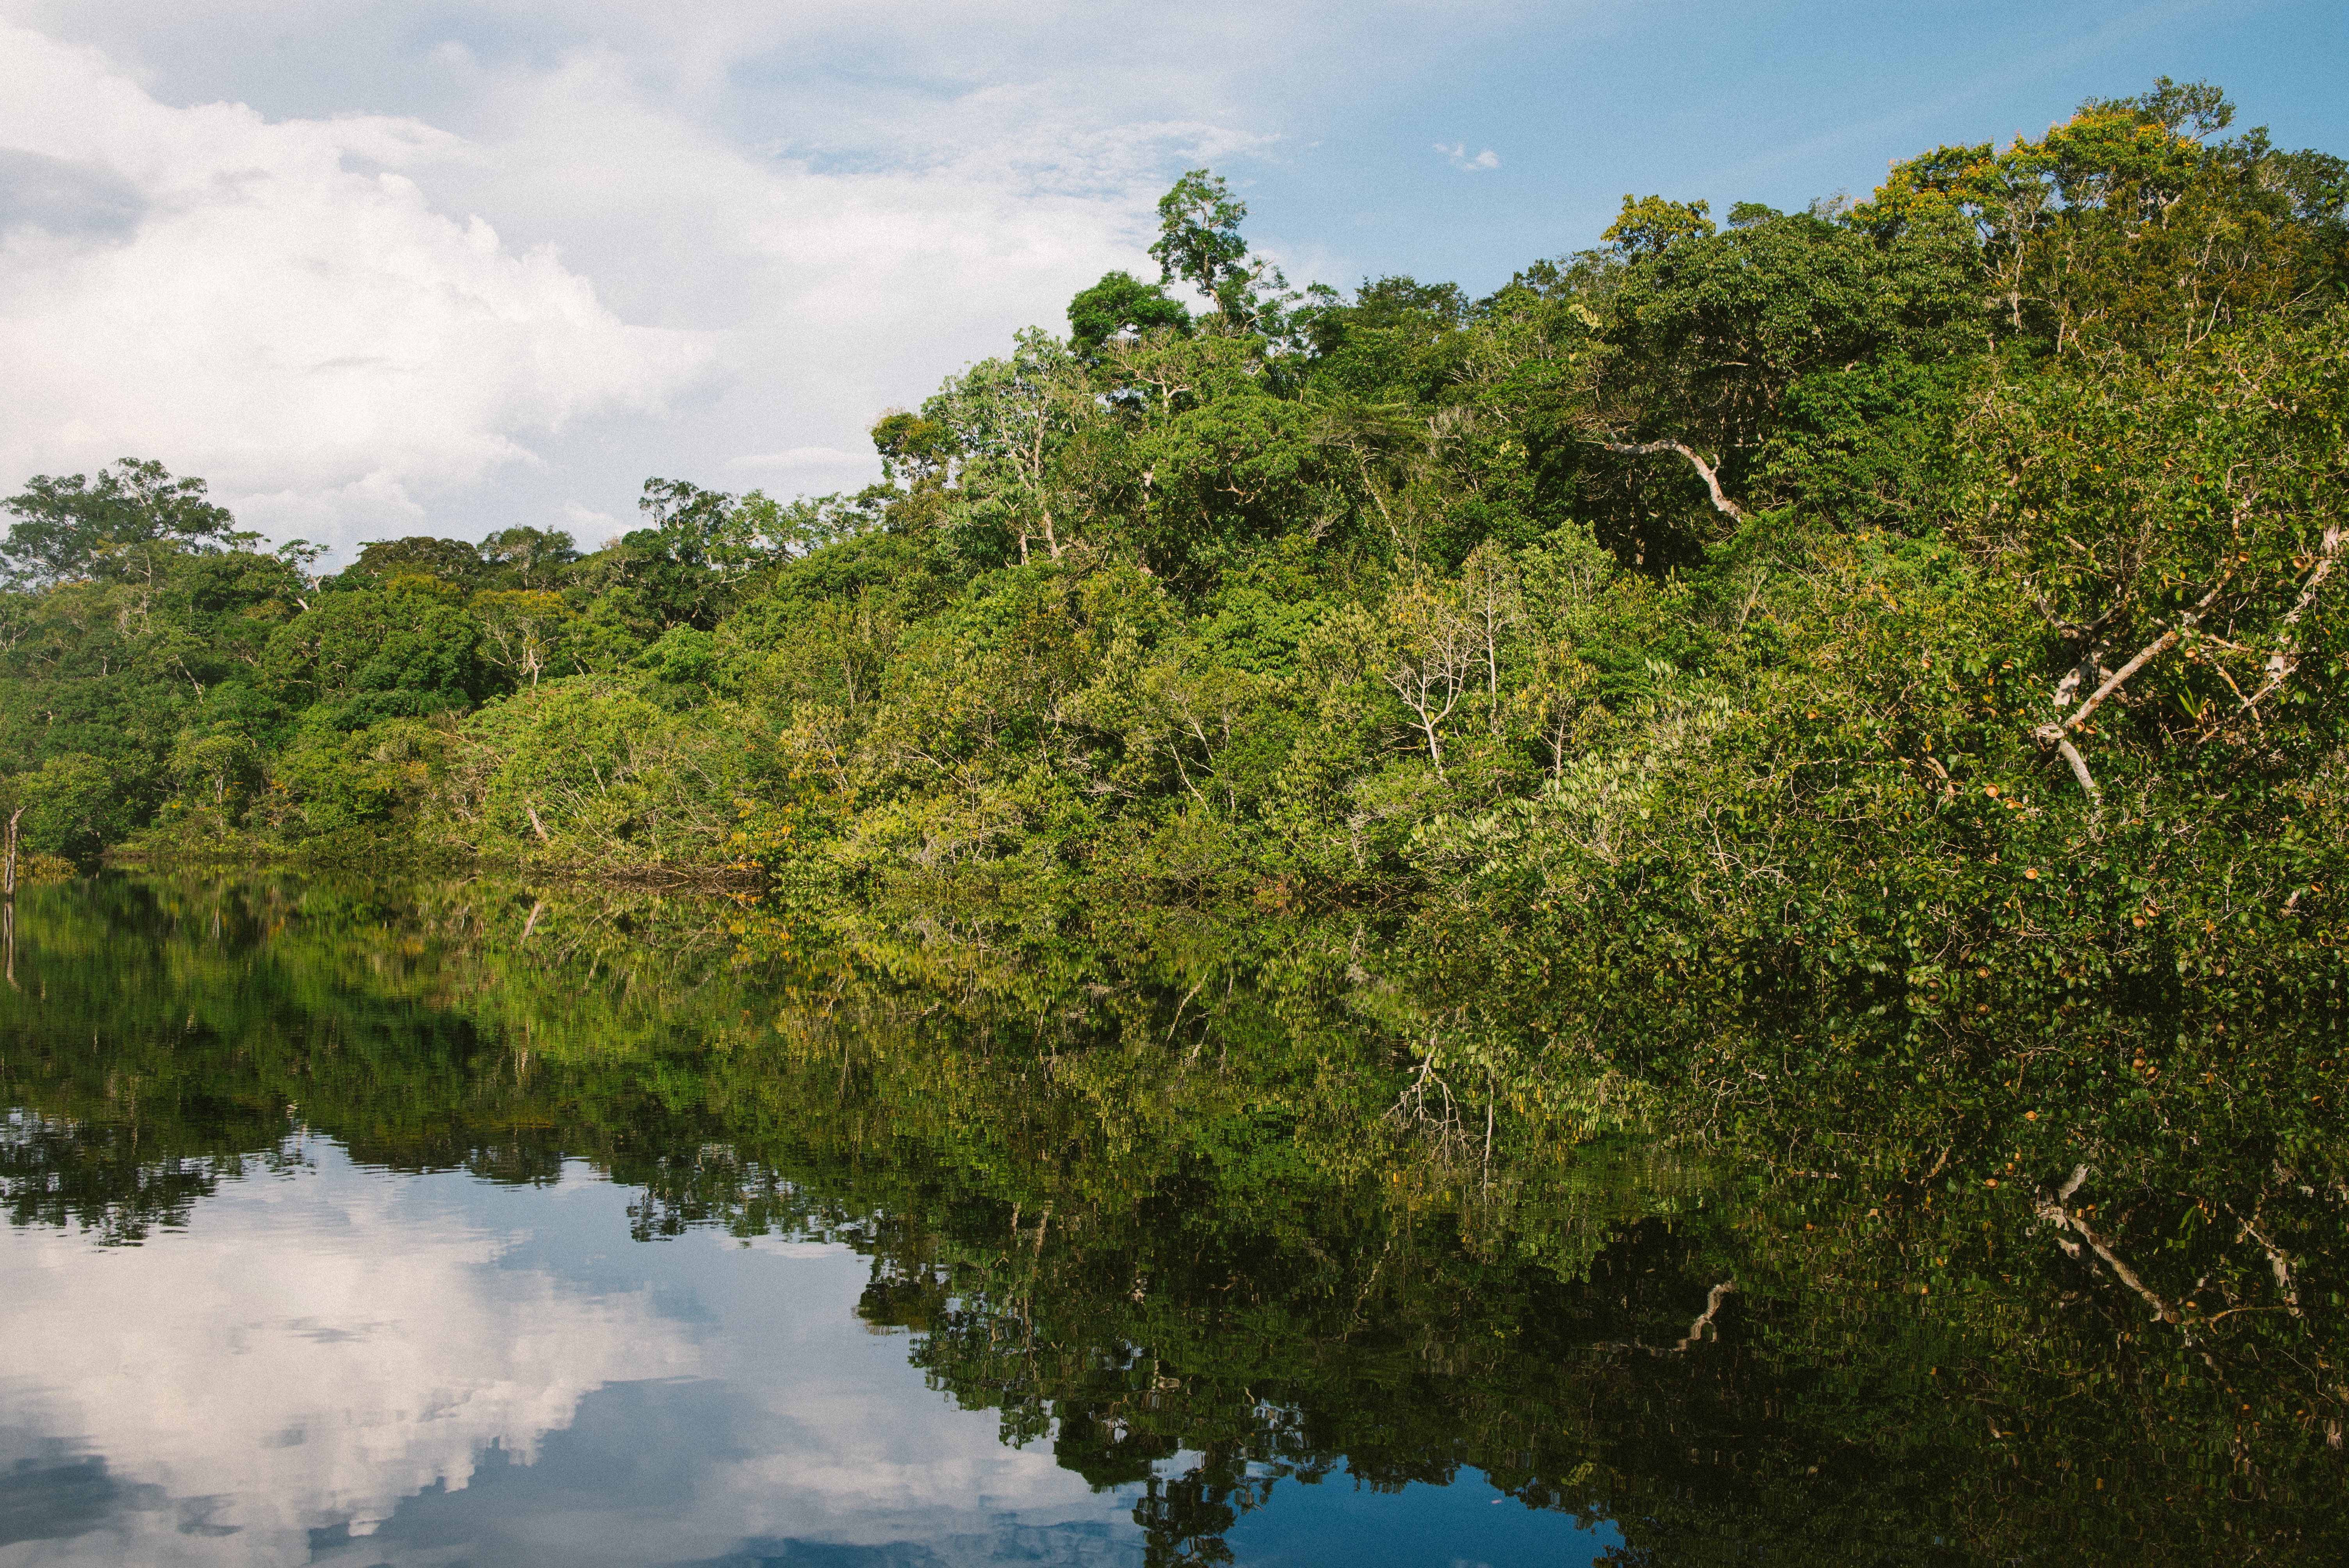 WWF Amazonin metsäpaloista: "Maailman keuhkot eivät saa tuhoutua"